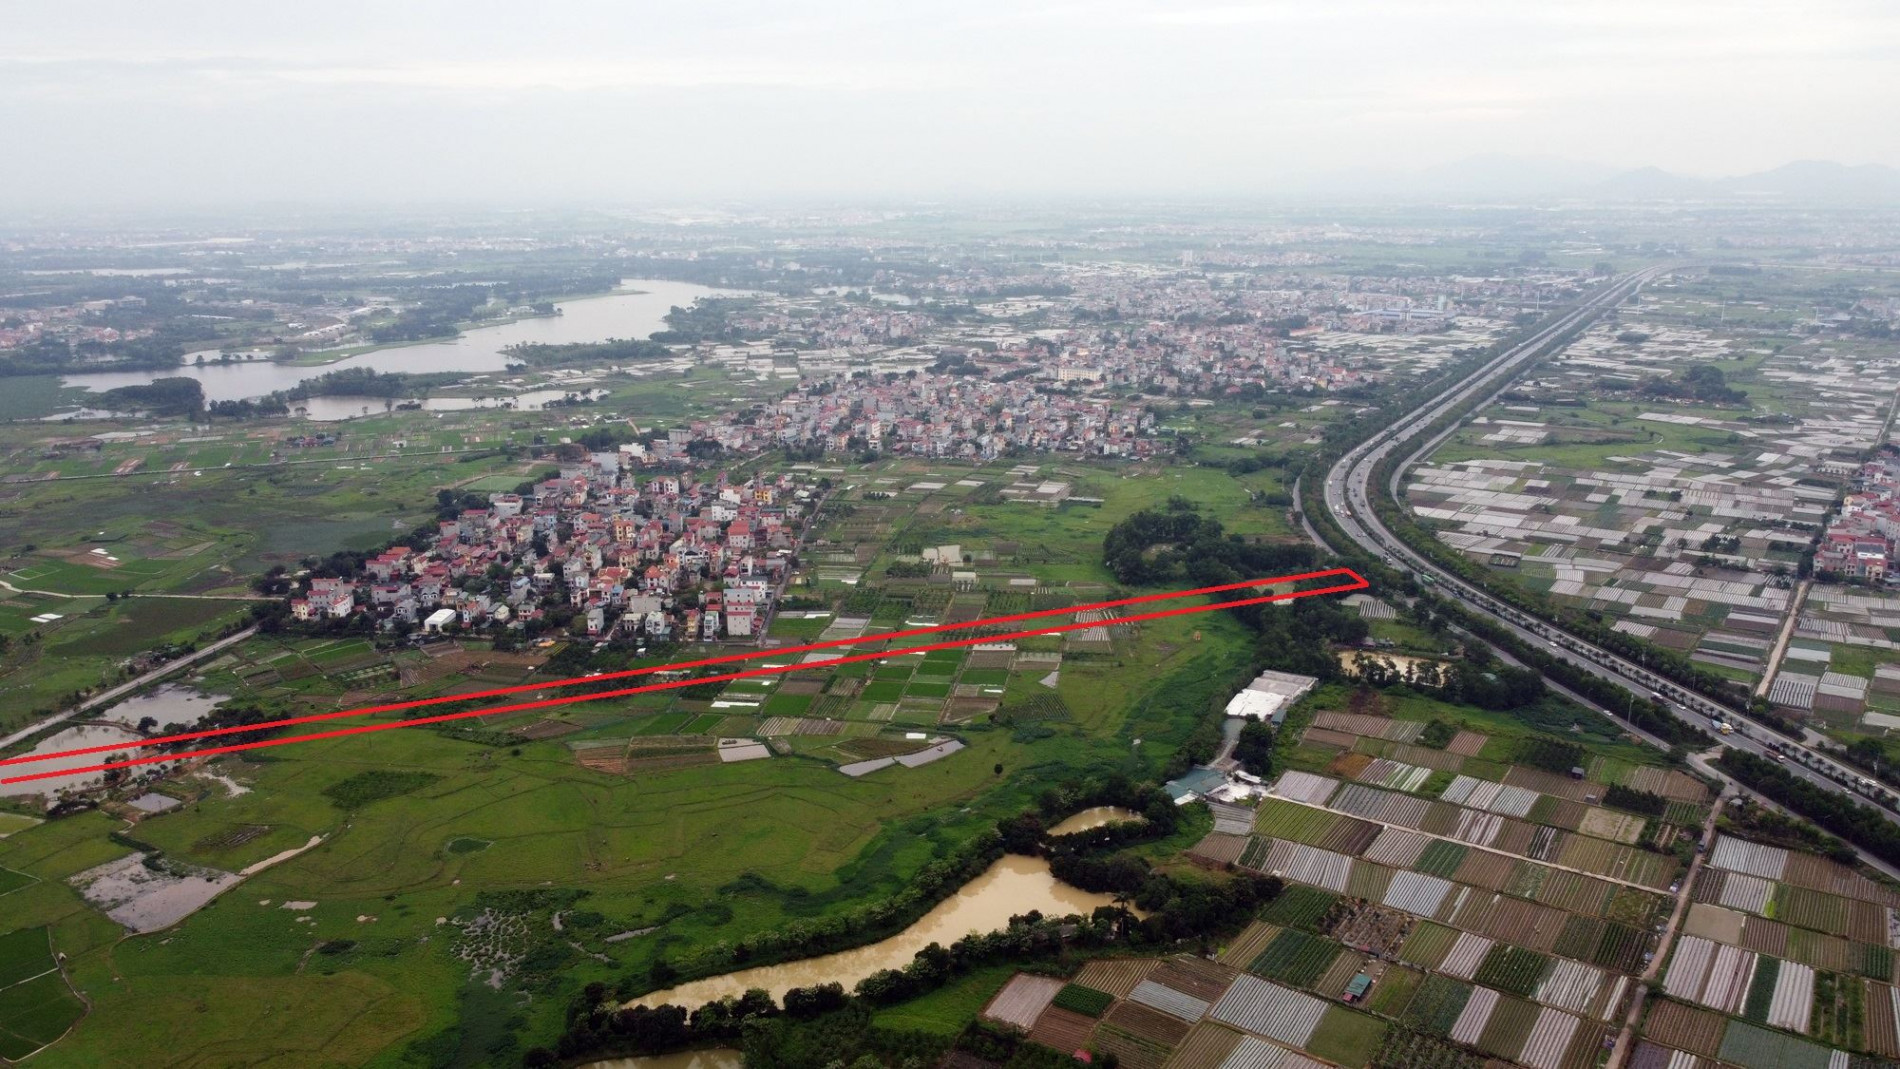 Đường sẽ mở theo quy hoạch ở xã Vân Nội, Đông Anh, Hà Nội (phần 2)